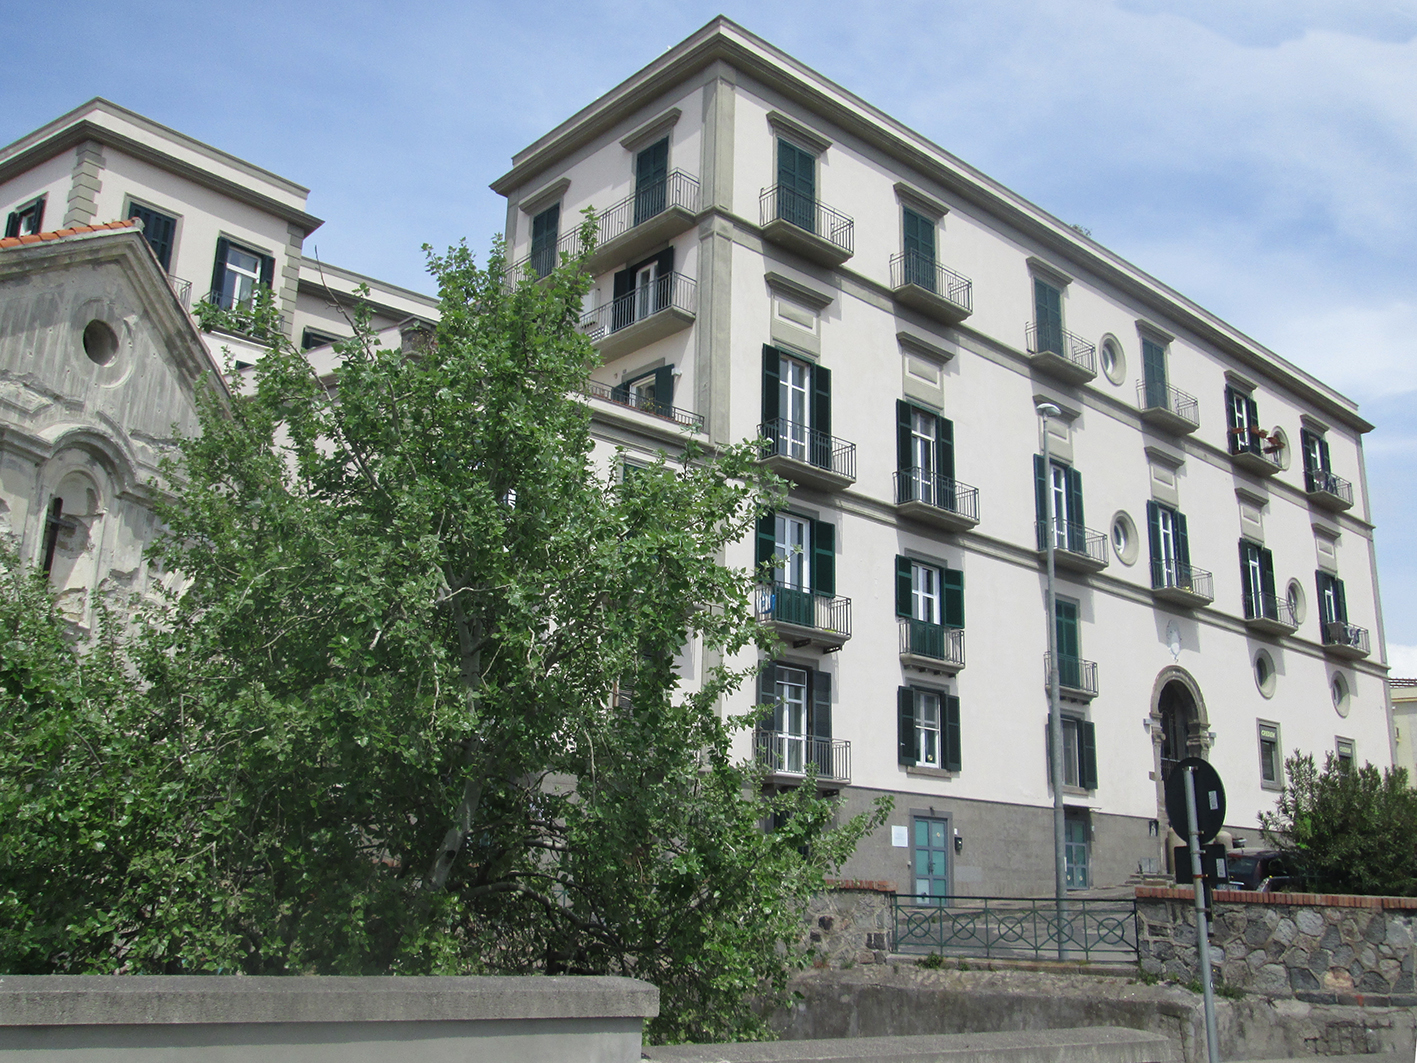 Palazzo Maglione (palazzo, civico) - Pozzuoli (NA) 